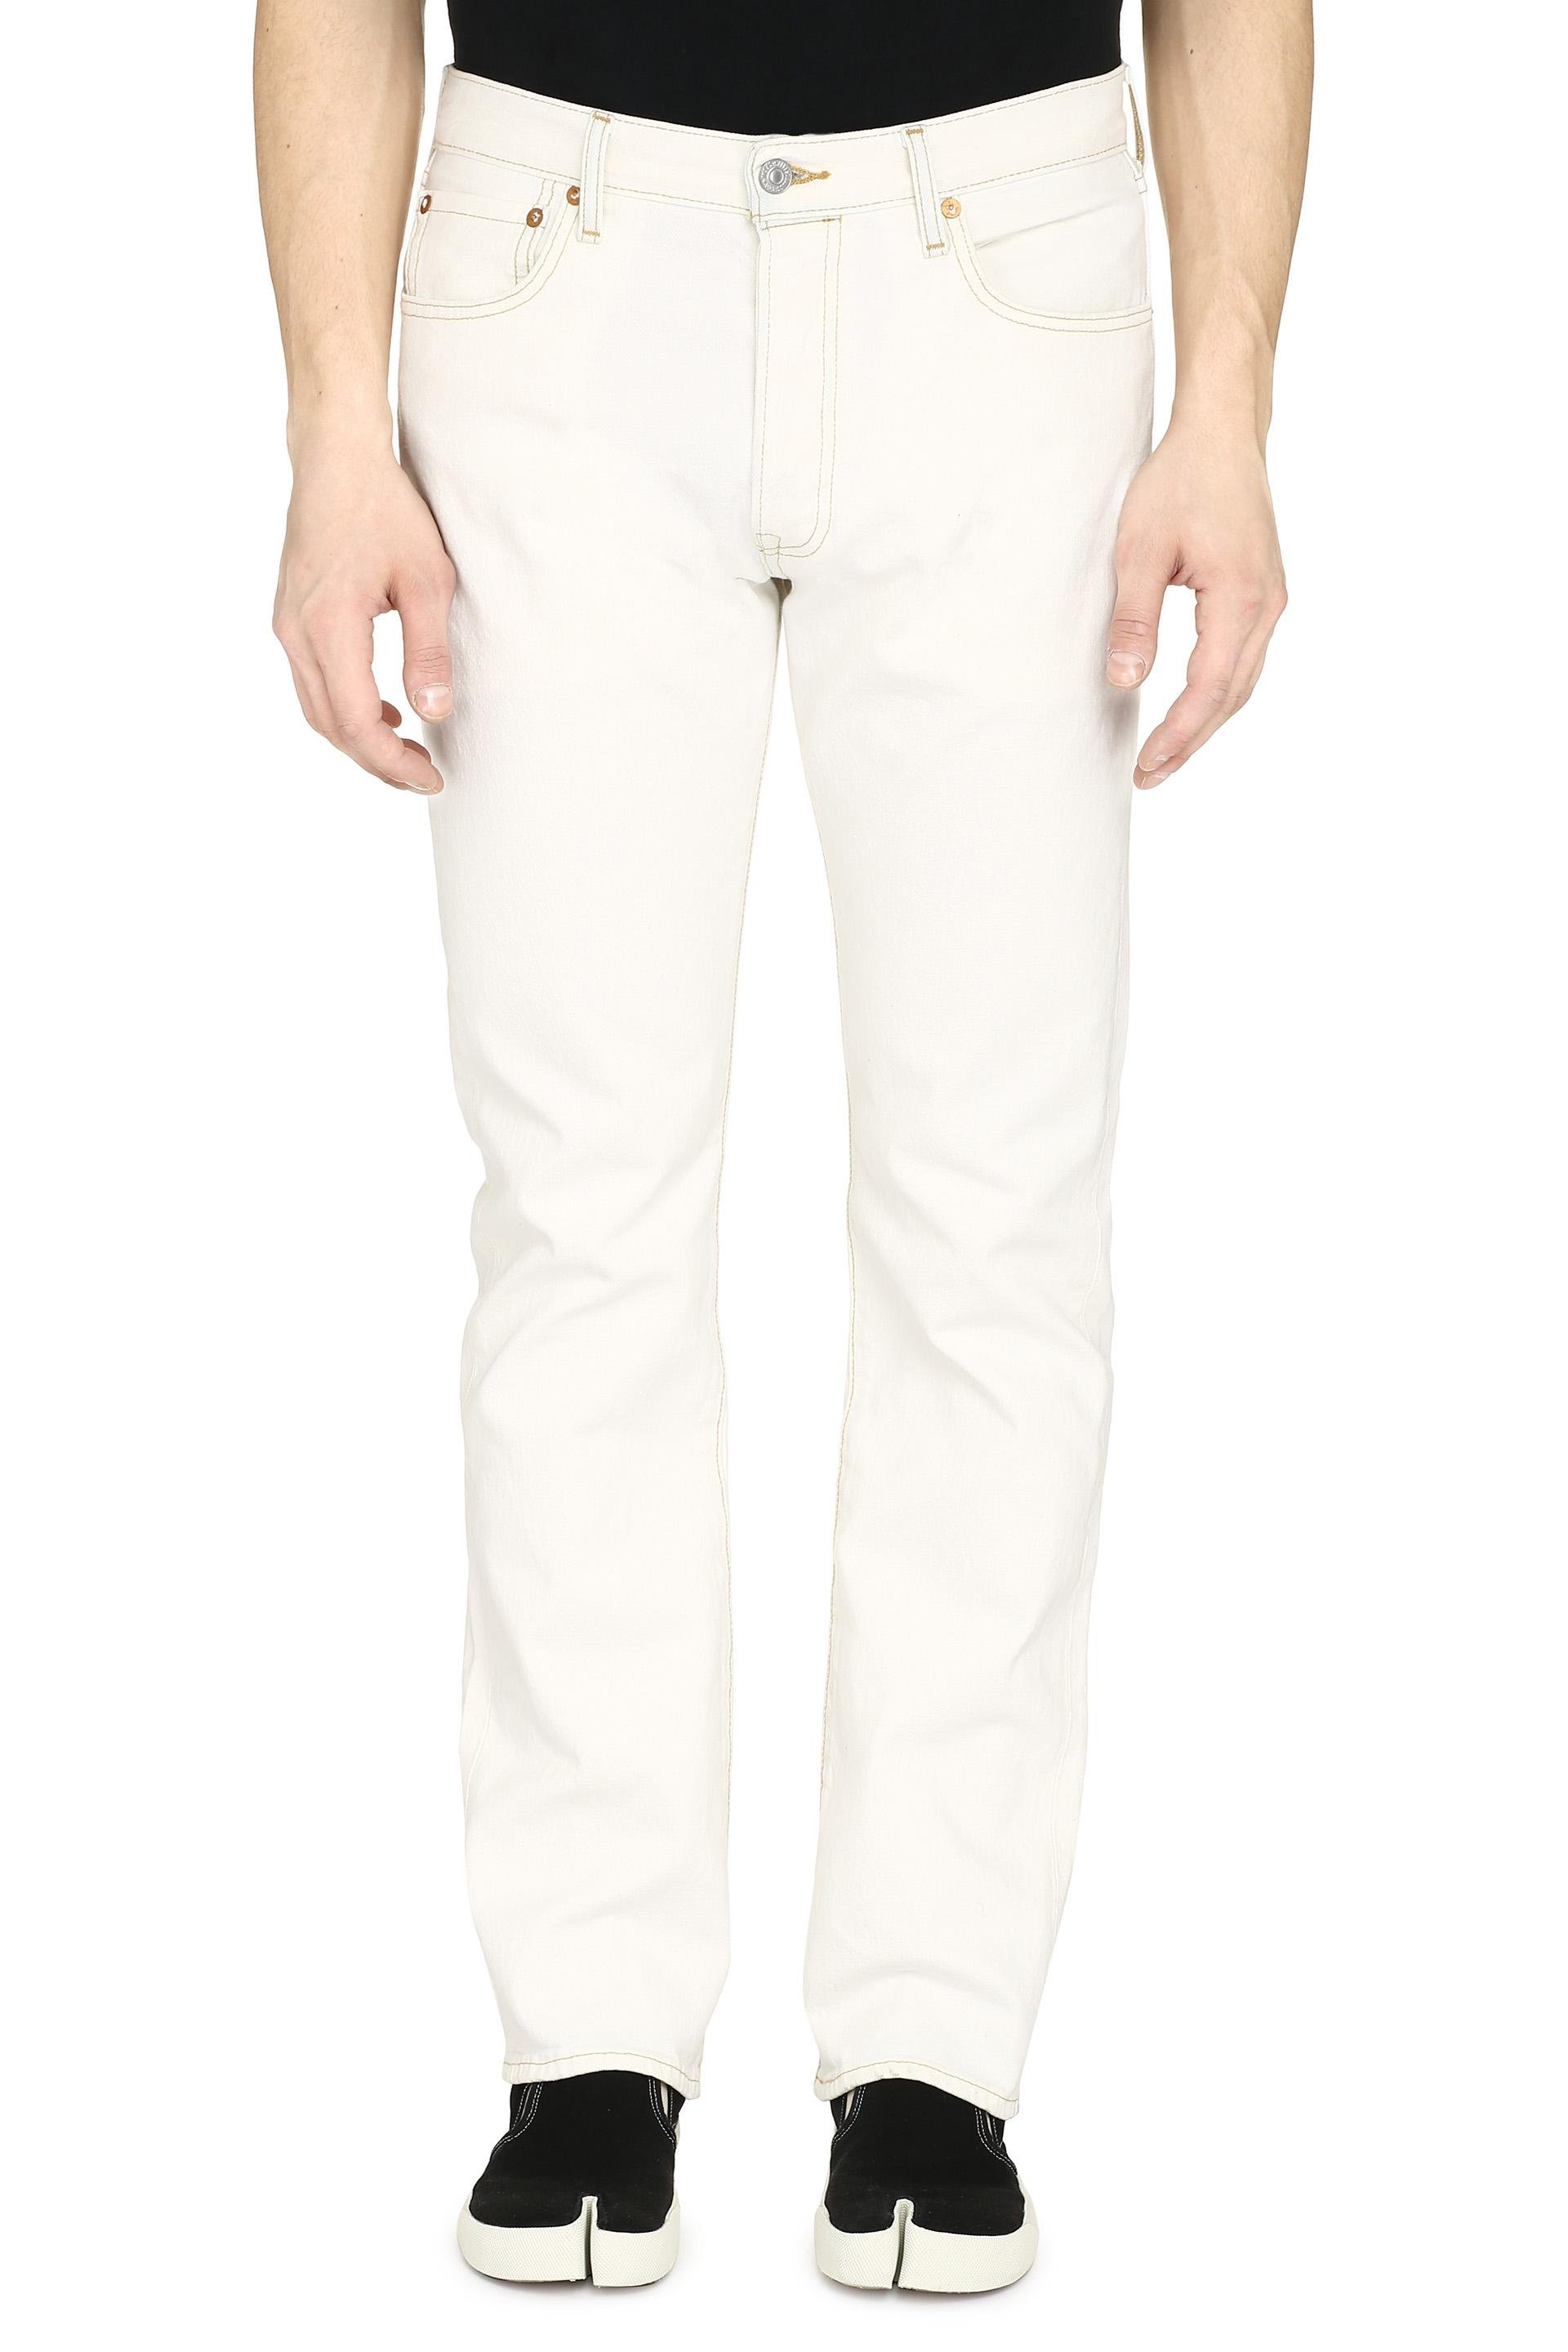 Levi's Denim 501 Straight Leg Jeans in White for Men - Lyst